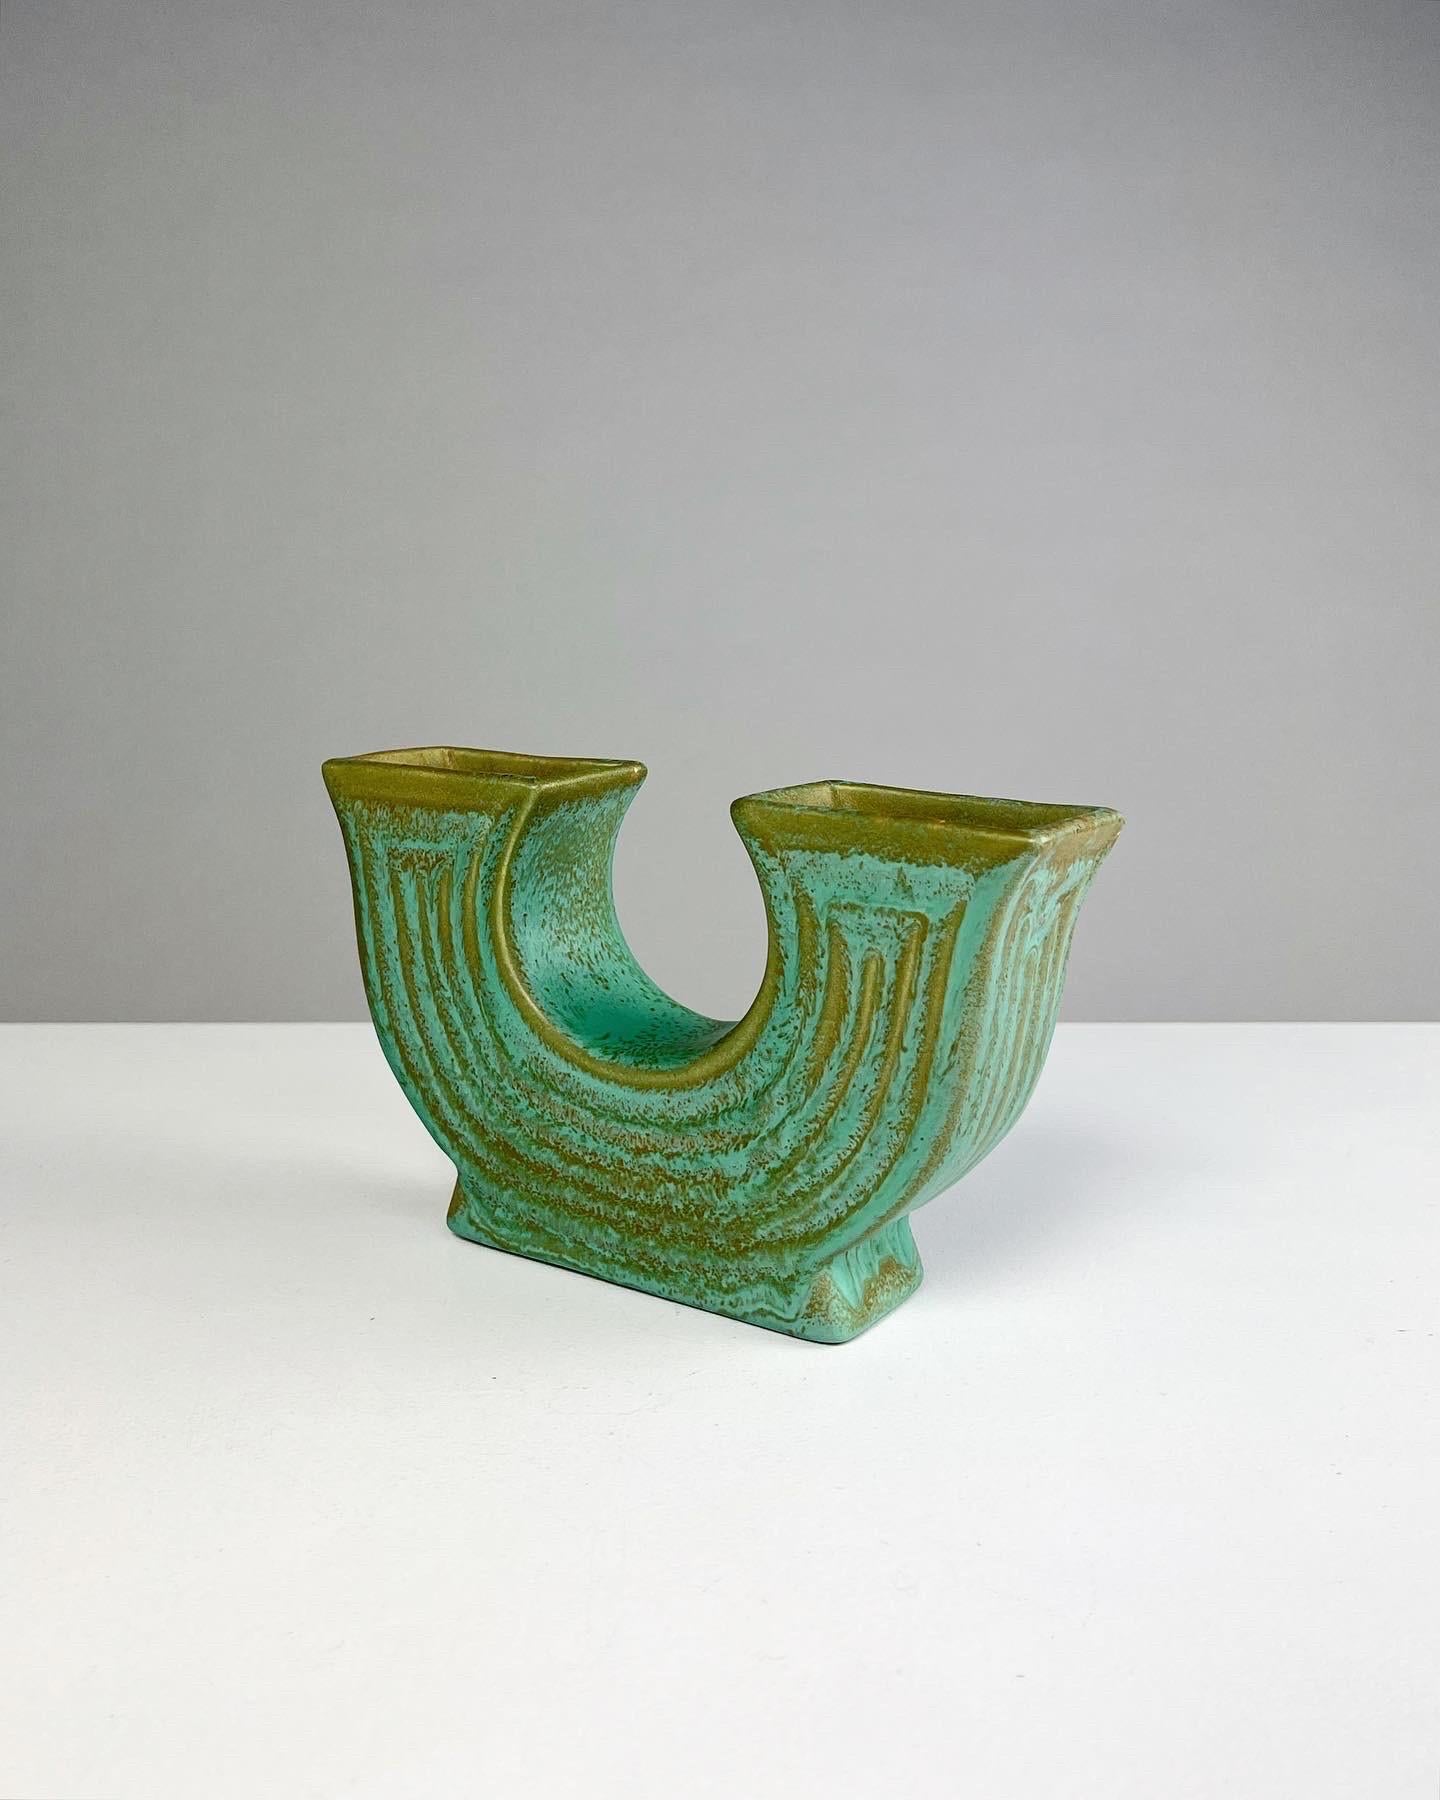 Rare vase en grès à double face par Ewald Dahlskog pour Bo Fajans (Bobergs Fajansfabrik), modèle n° D 92, conçu en 1938 et fabriqué à la main jusqu'au début ou au milieu des années 1940 en Suède. 

La couleur de la glaçure est appelée 